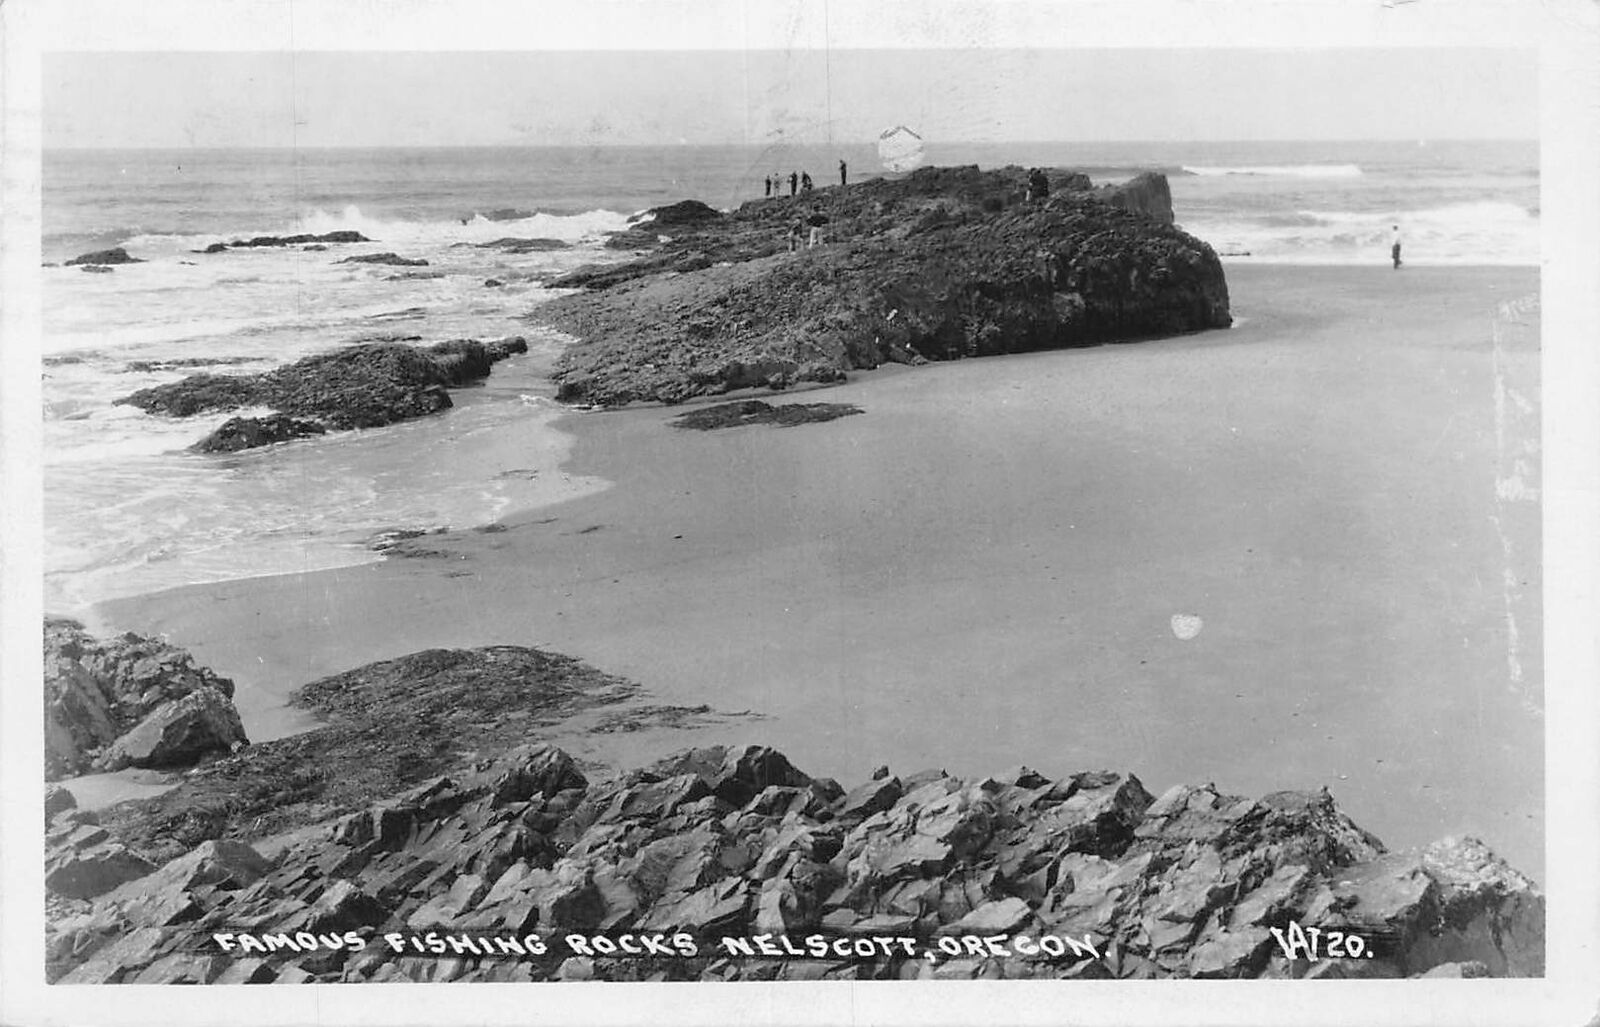 J74/ Nelscott Oregon RPPC Postcard c1940s Famous Fishing Rocks  275